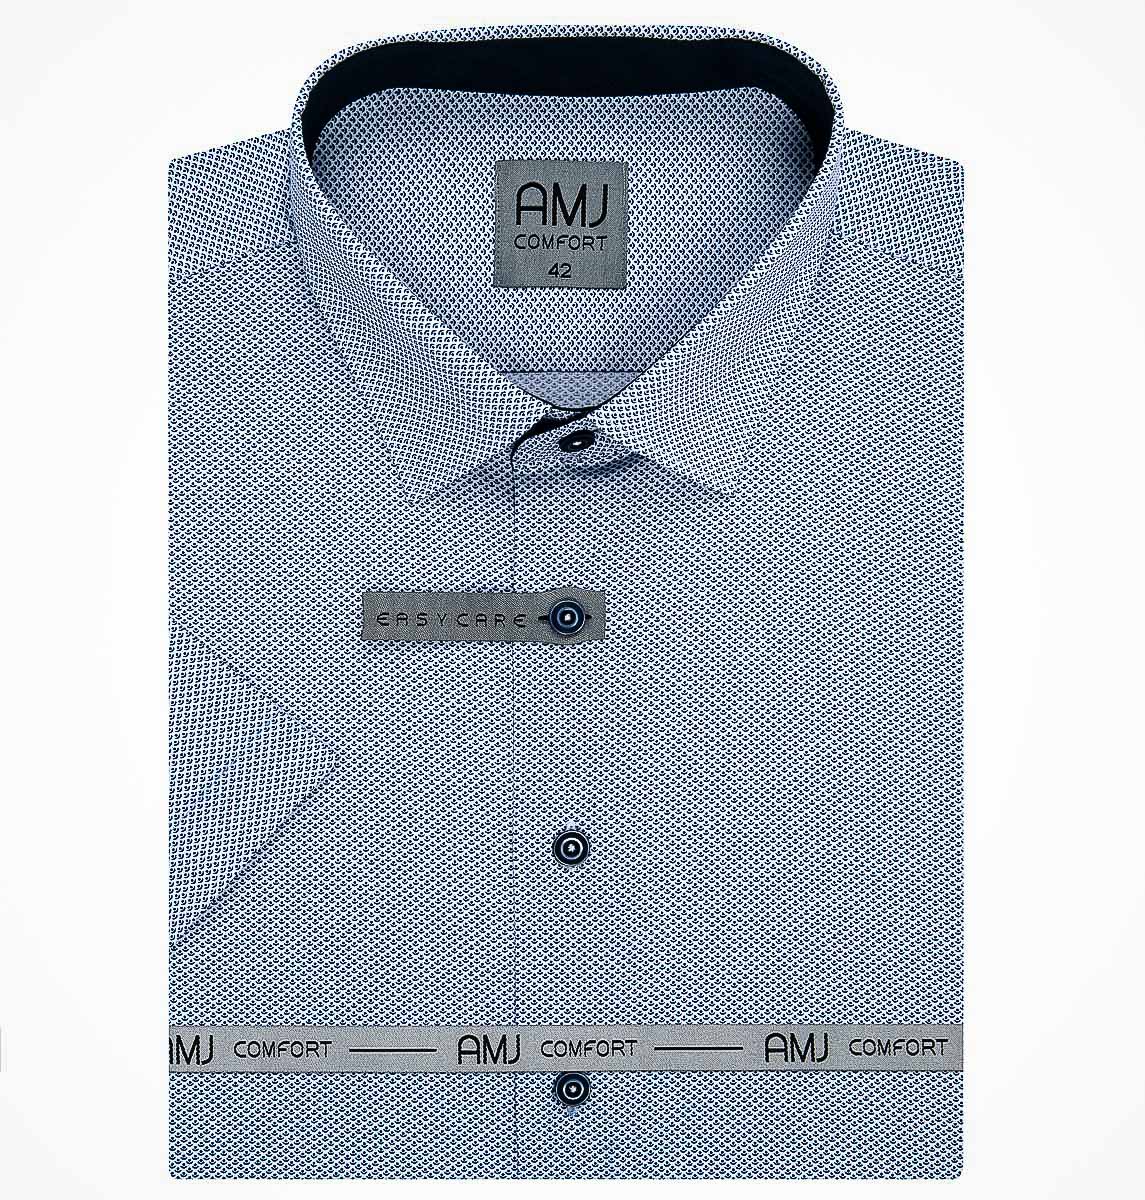 Pánská košile AMJ bavlněná, modrá s drobnými vlnkami a tečkami VKBR1207, krátký rukáv (regular + slim fit)